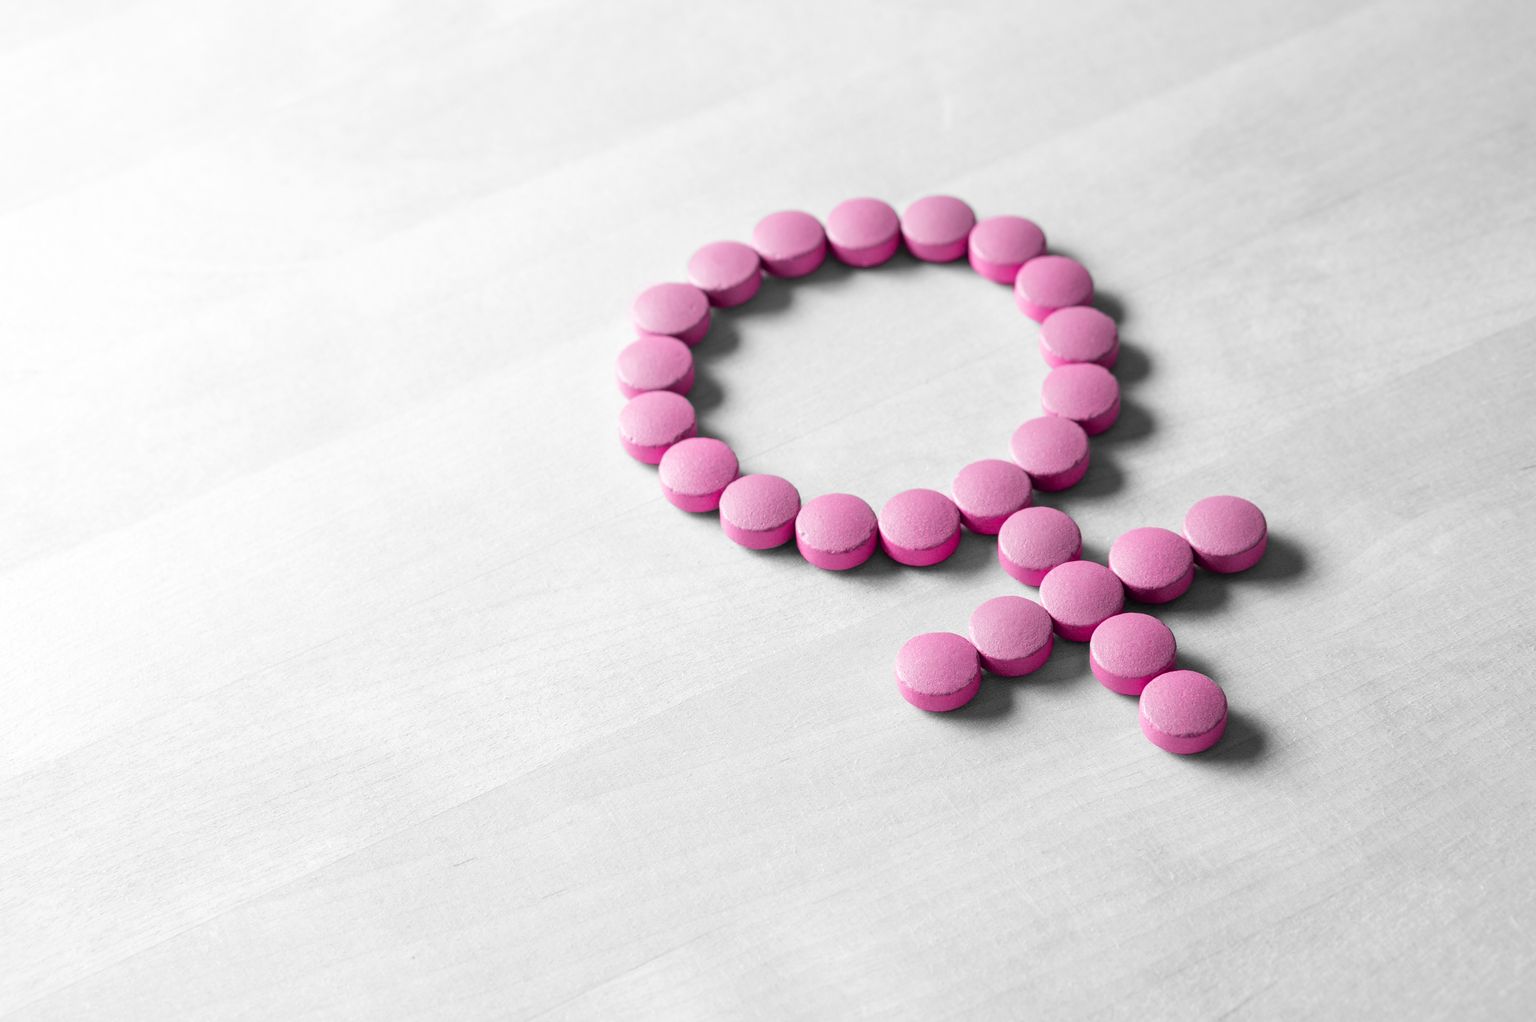 Símbolo sexual feito de comprimidos ou pílulas vermelhas rosa sobre mesa de madeira.